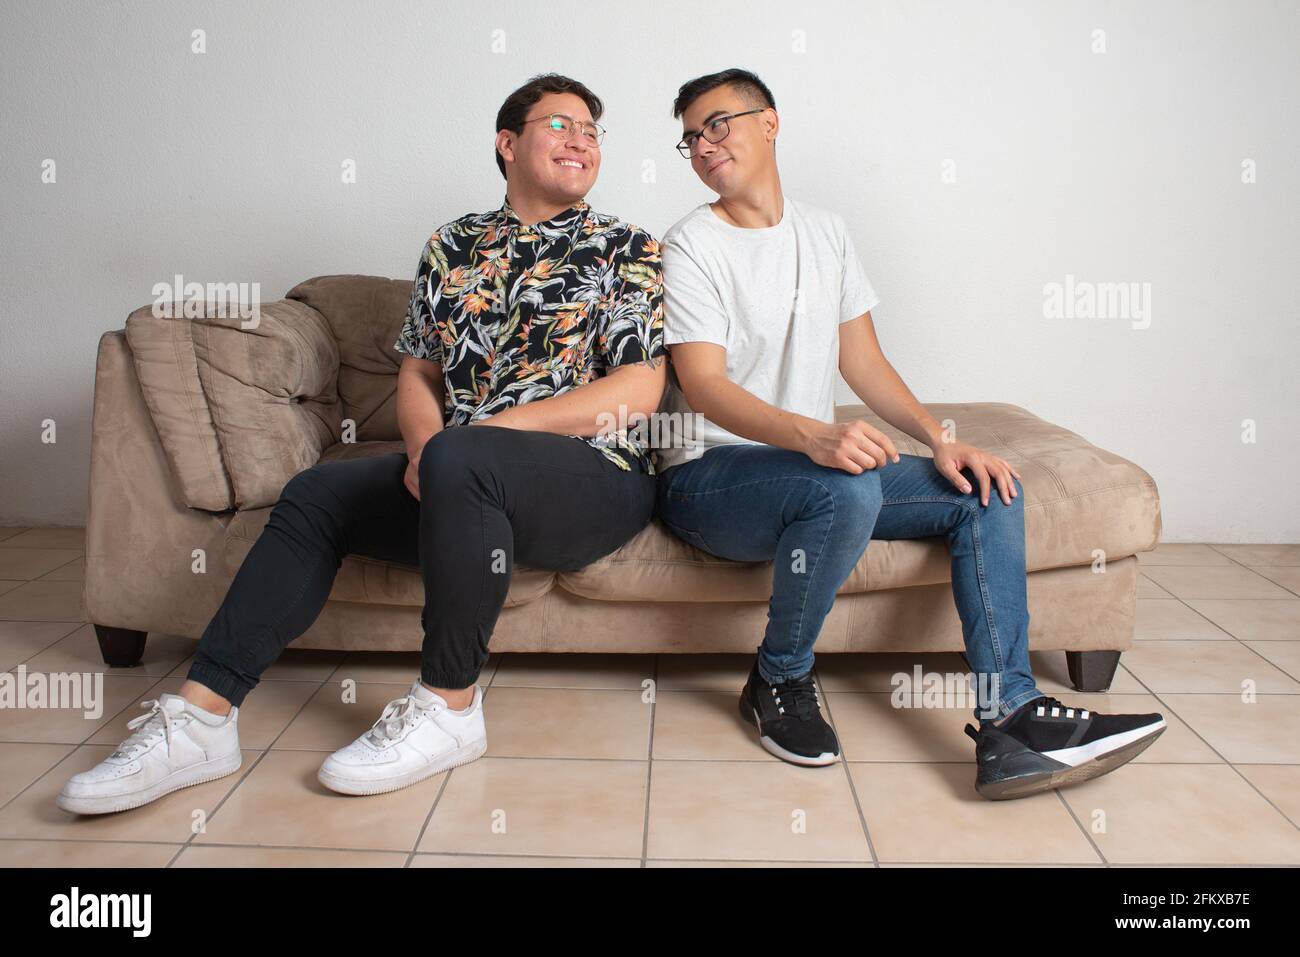 Männliches Paar, das in ihrem leeren Wohnzimmer sitzt, schaut glücklich Am Horizont Stockfoto